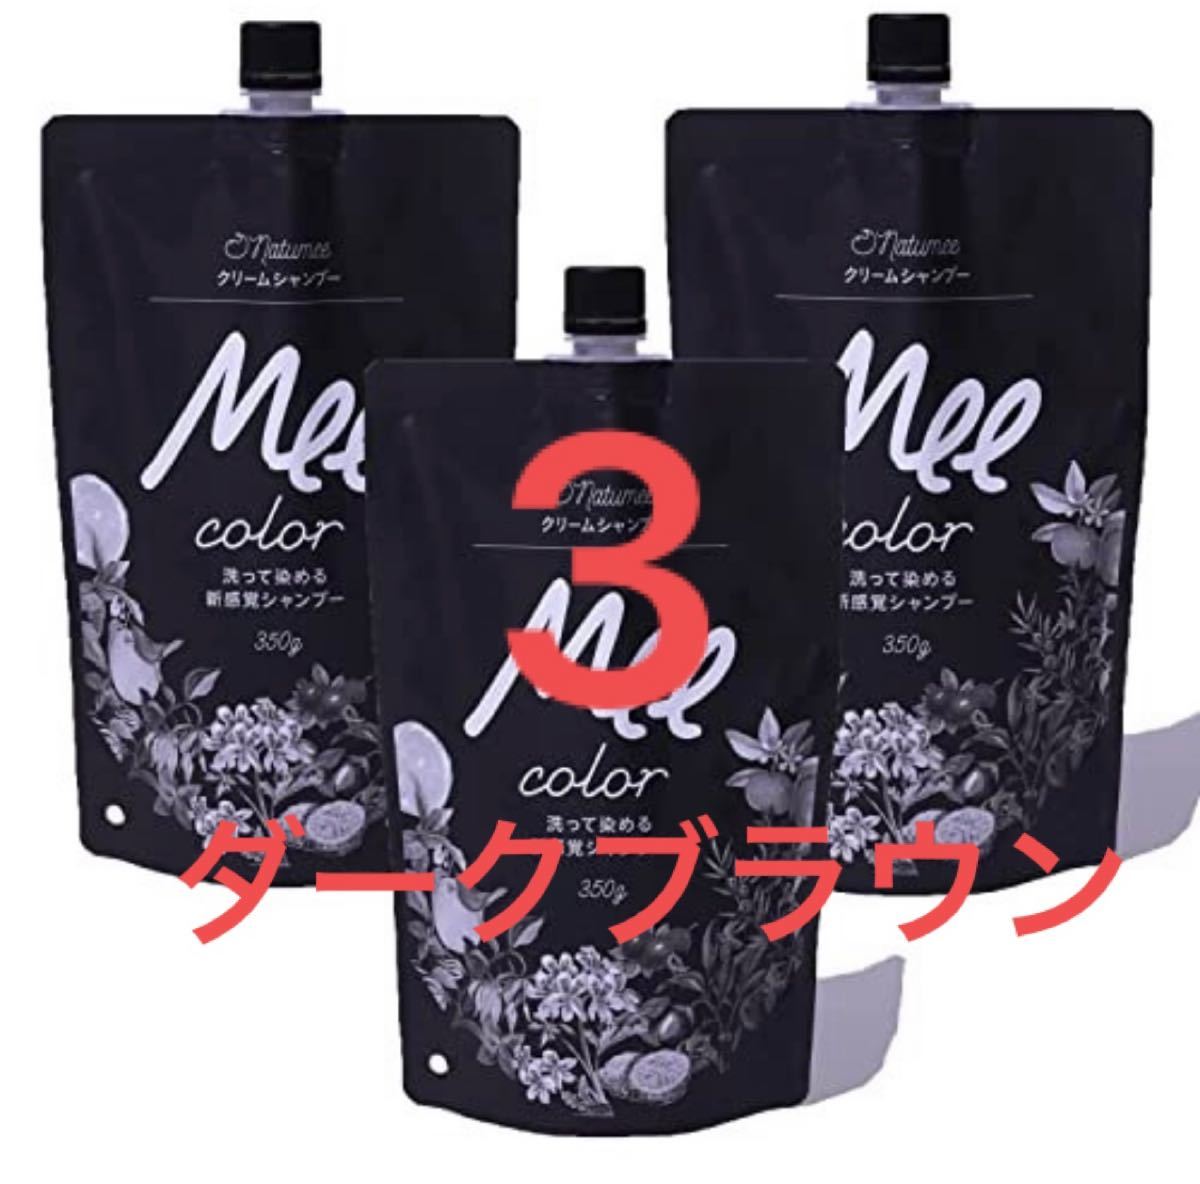 クリームシャンプー Mee color ブラック 350g× 2袋